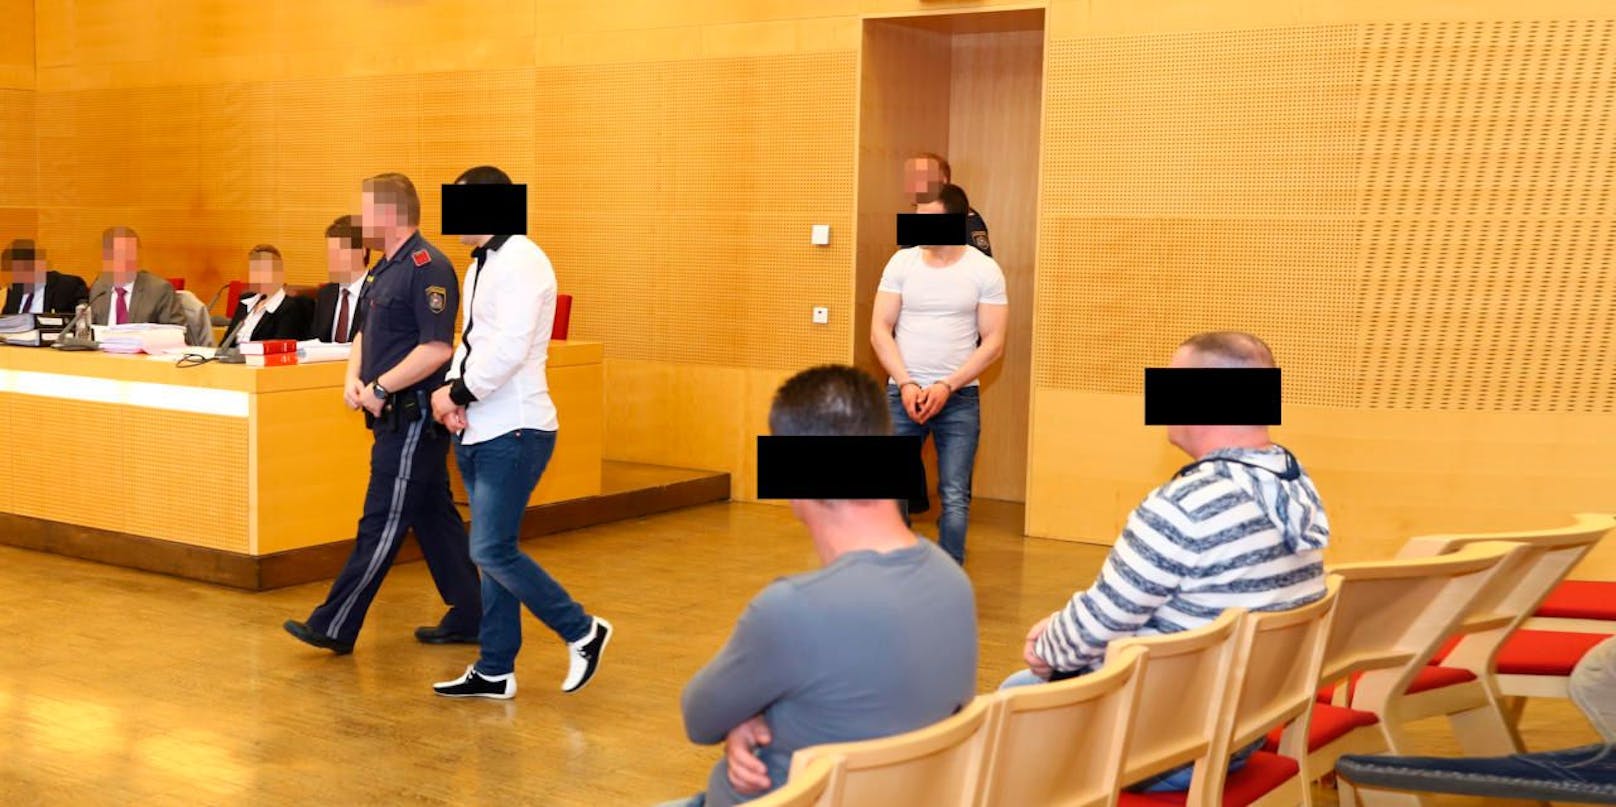 Die vier Angeklagten im Gerichtssaal in Wels.